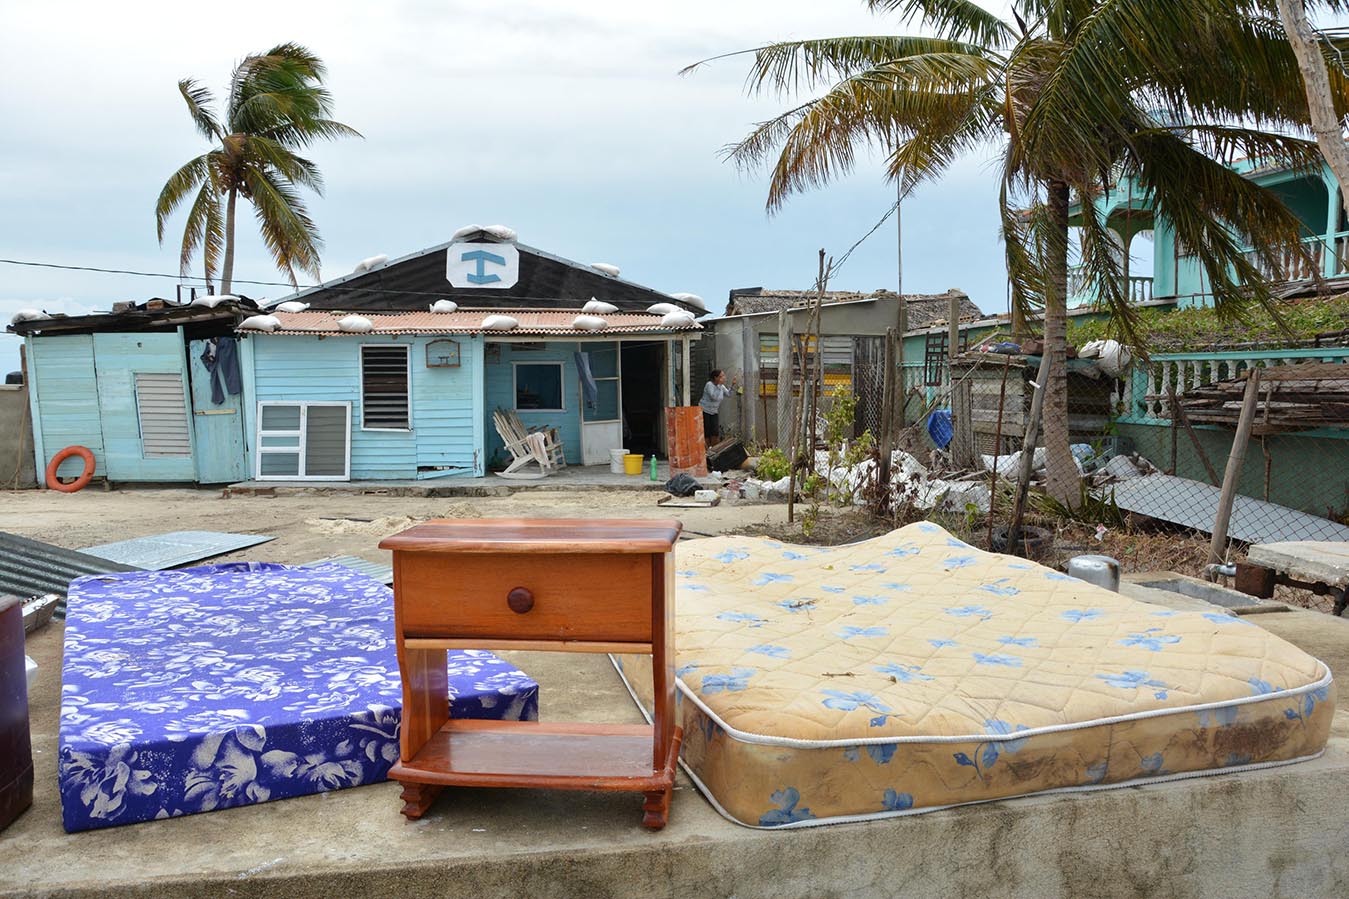 Afectaciones provocadas en la base habitacional de la provincia, tras el paso del Huracán Irma, en Camagüey, Cuba, el 9 de septiembre de 2017.